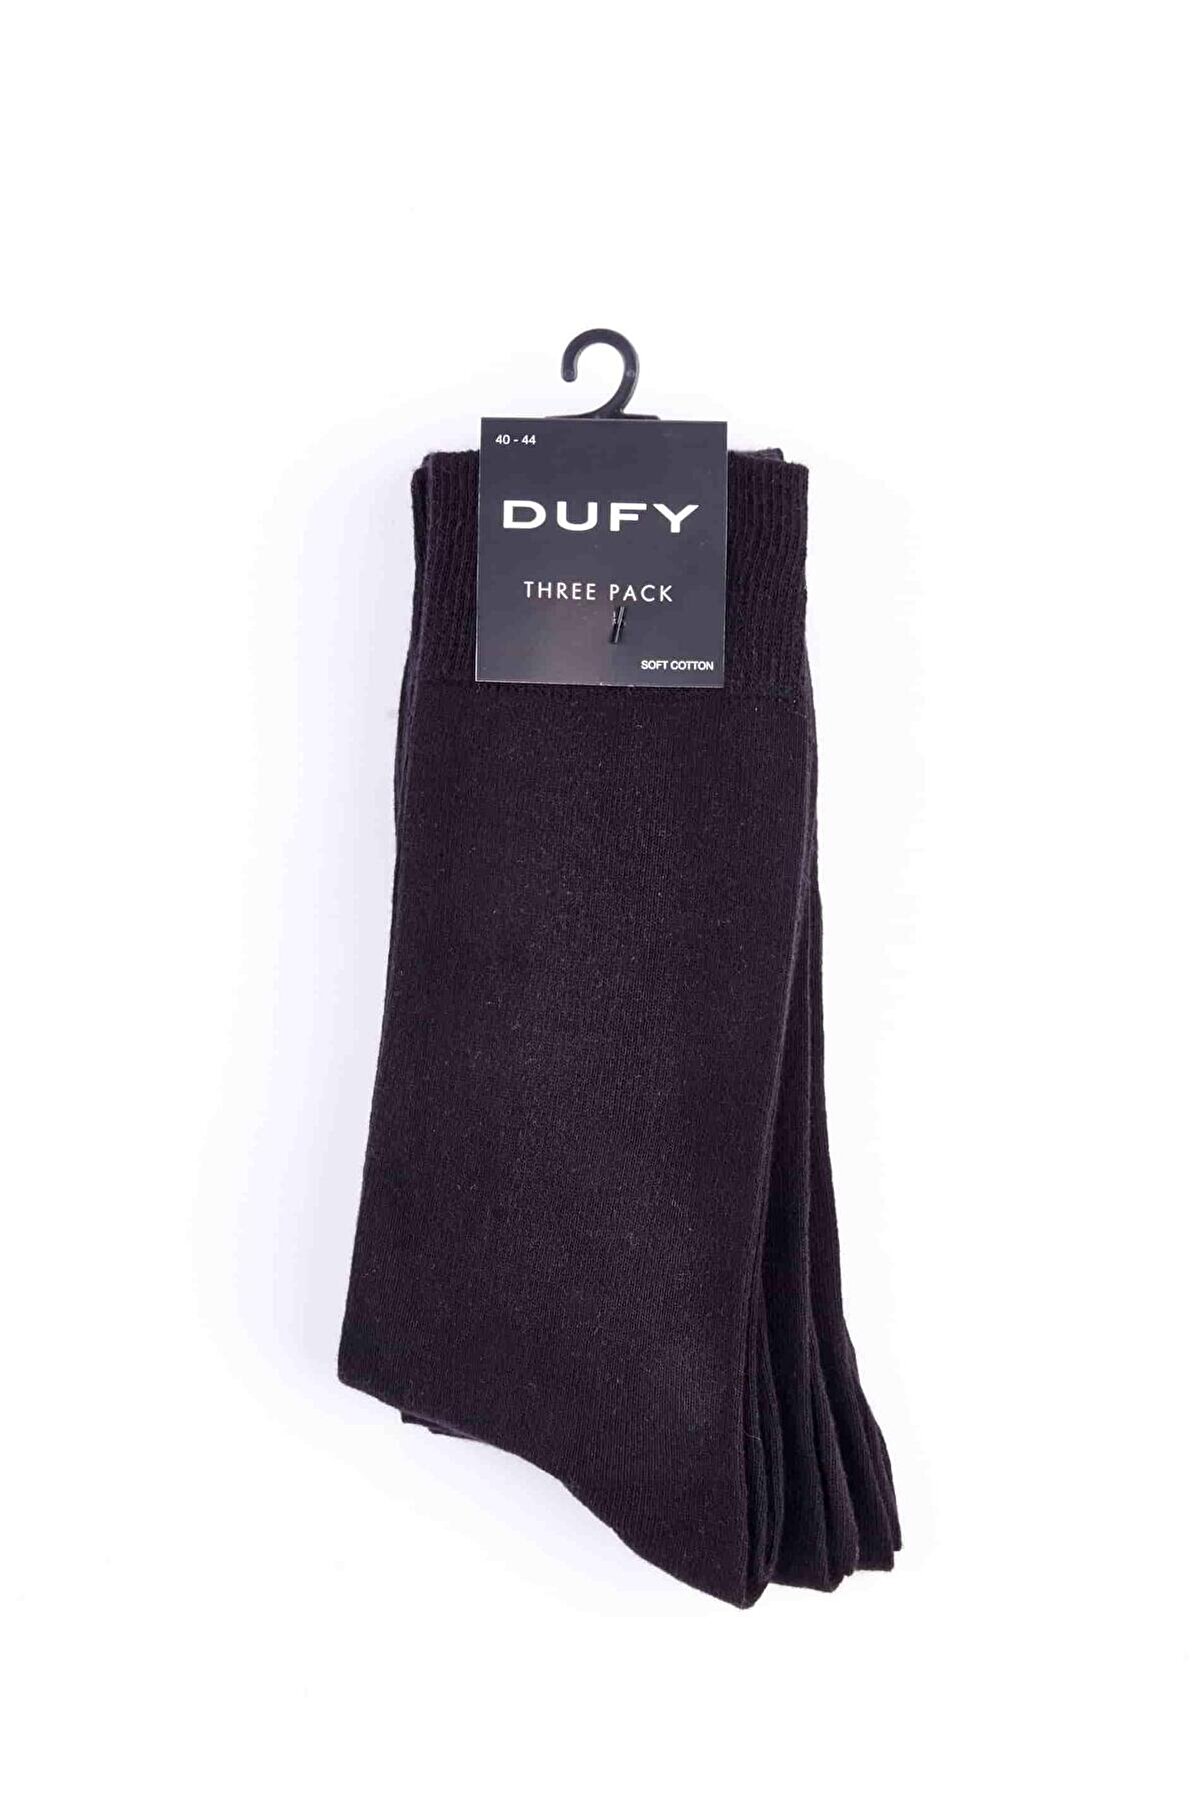 Dufy Siyah Erkek Pamuklu Çorap - 40602